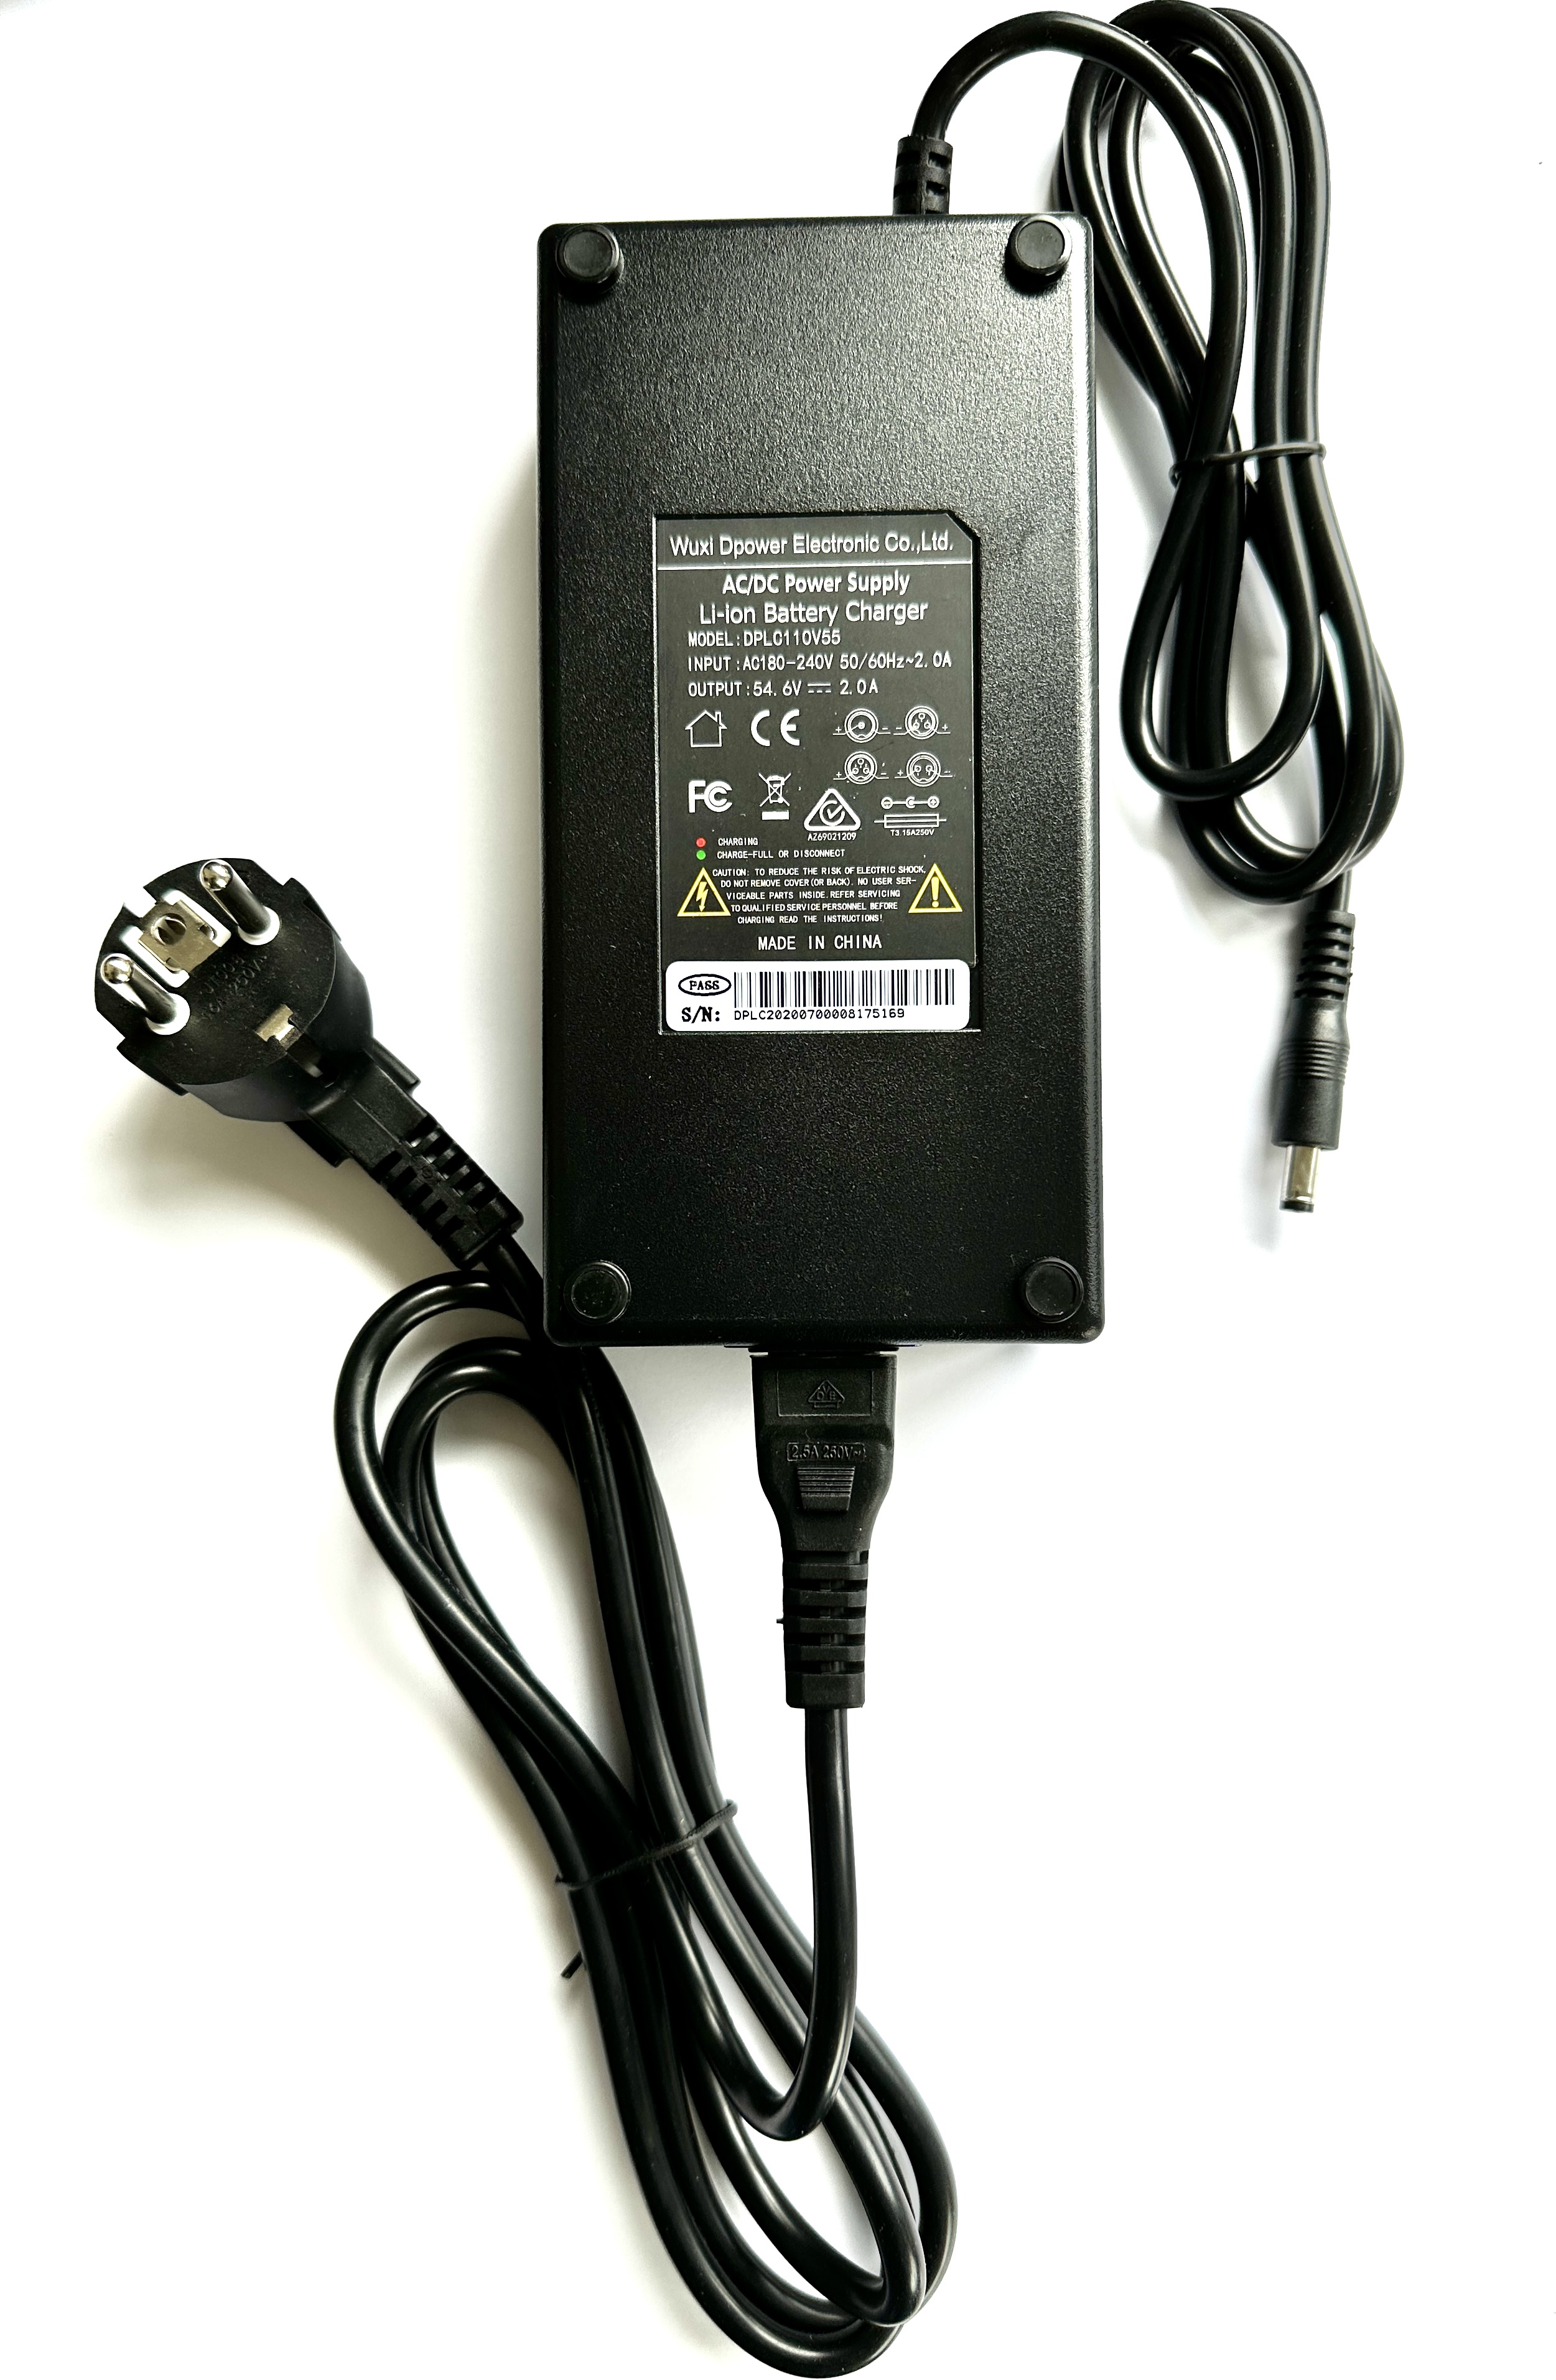 48V Charger for Li-ion battery DC Plug, 180 - 240V 2.0A